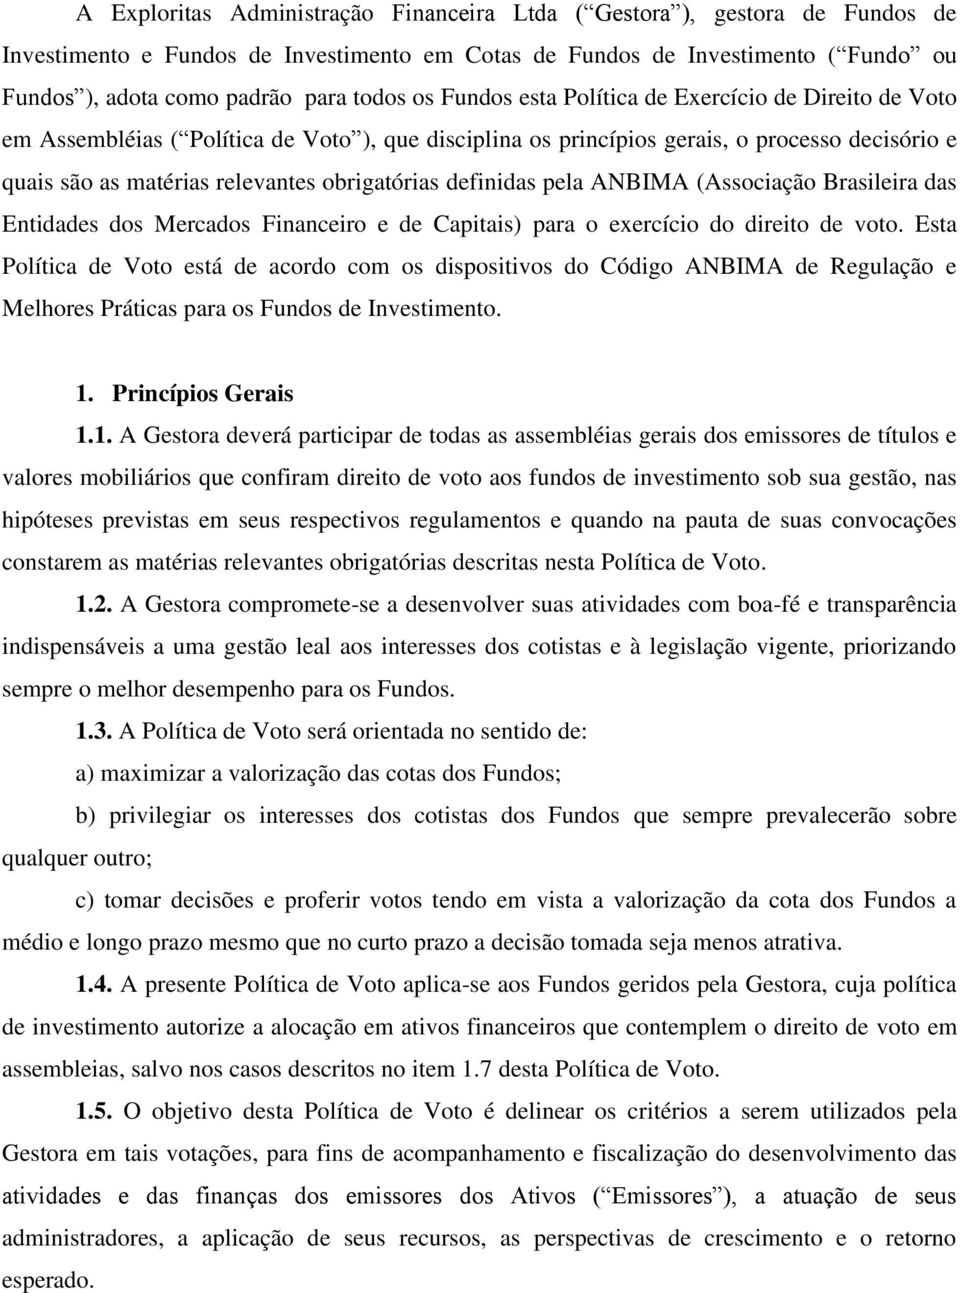 definidas pela ANBIMA (Associação Brasileira das Entidades dos Mercados Financeiro e de Capitais) para o exercício do direito de voto.